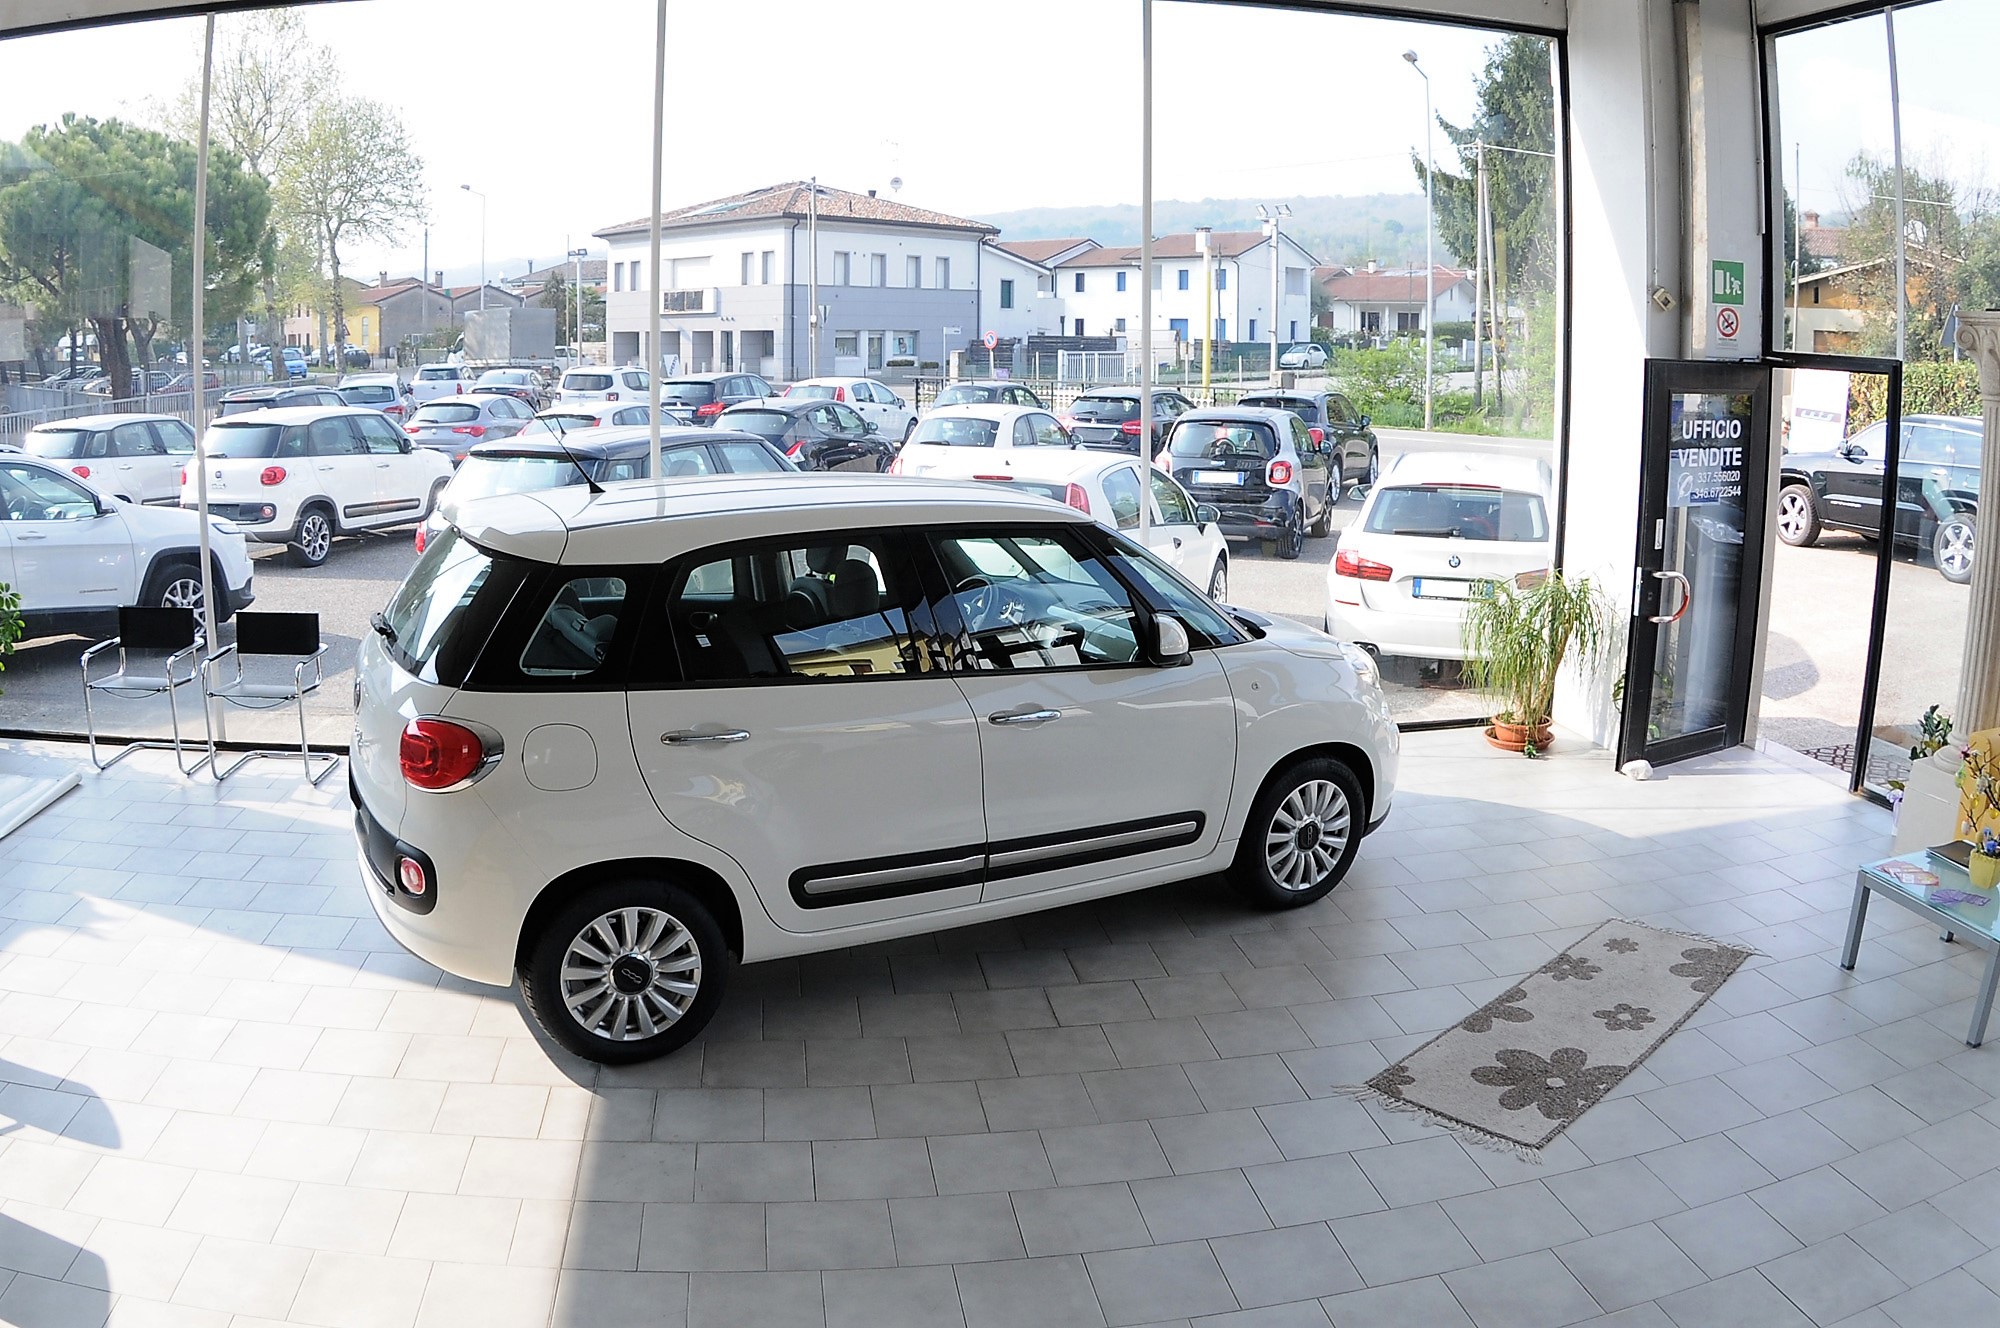 De Checchi Salone vendita auto nuove, usate, km 0 a Montebelluna, in provincia di Treviso